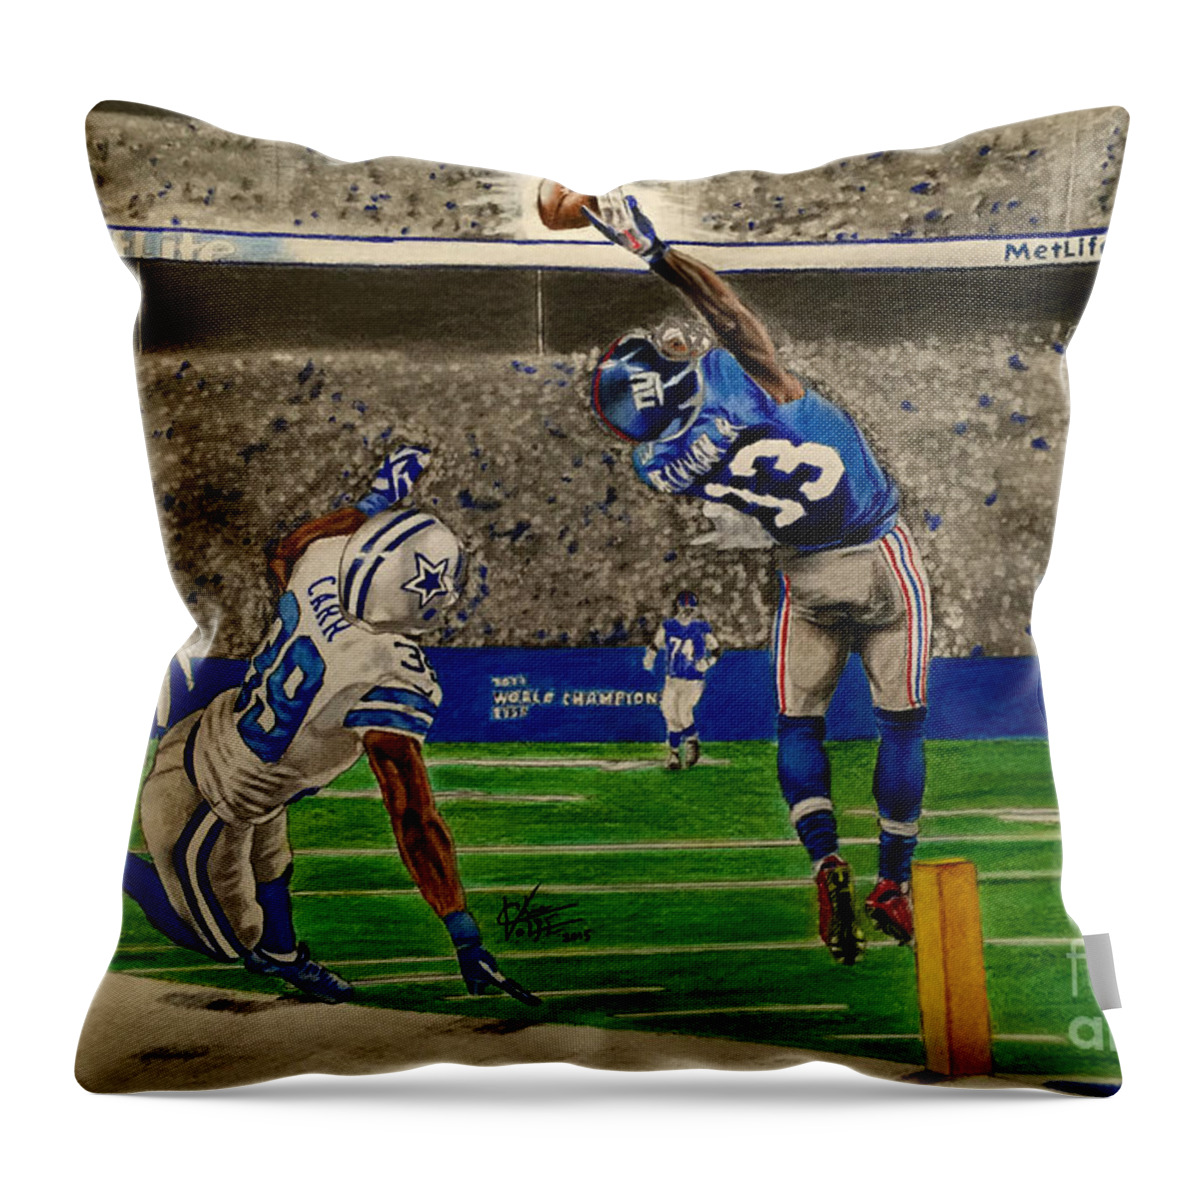 Odell Beckham Jr. Pillow Splash Effect Sports Pillows 